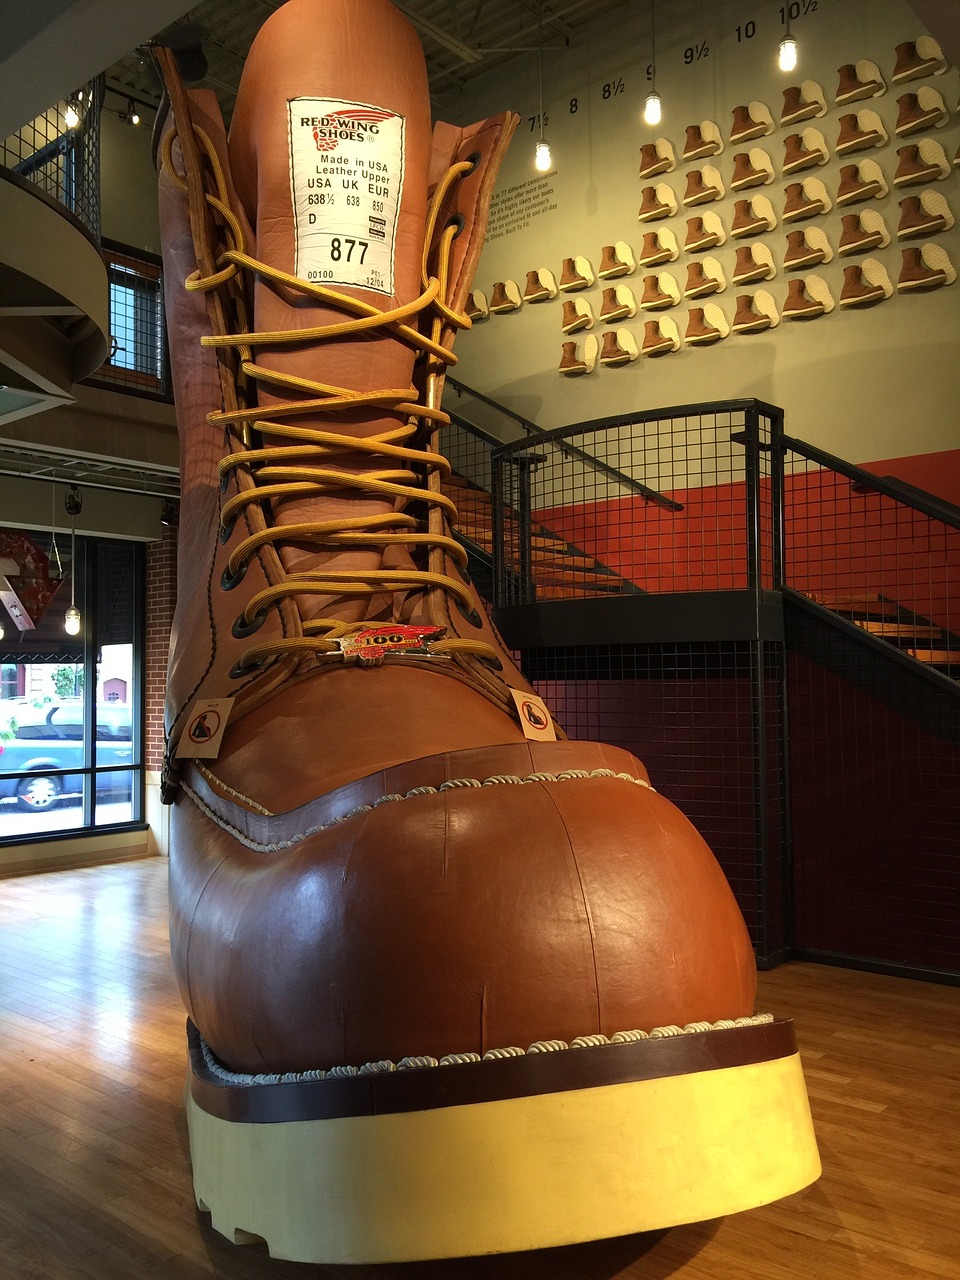 redwing minnesota world's largest boot free photo